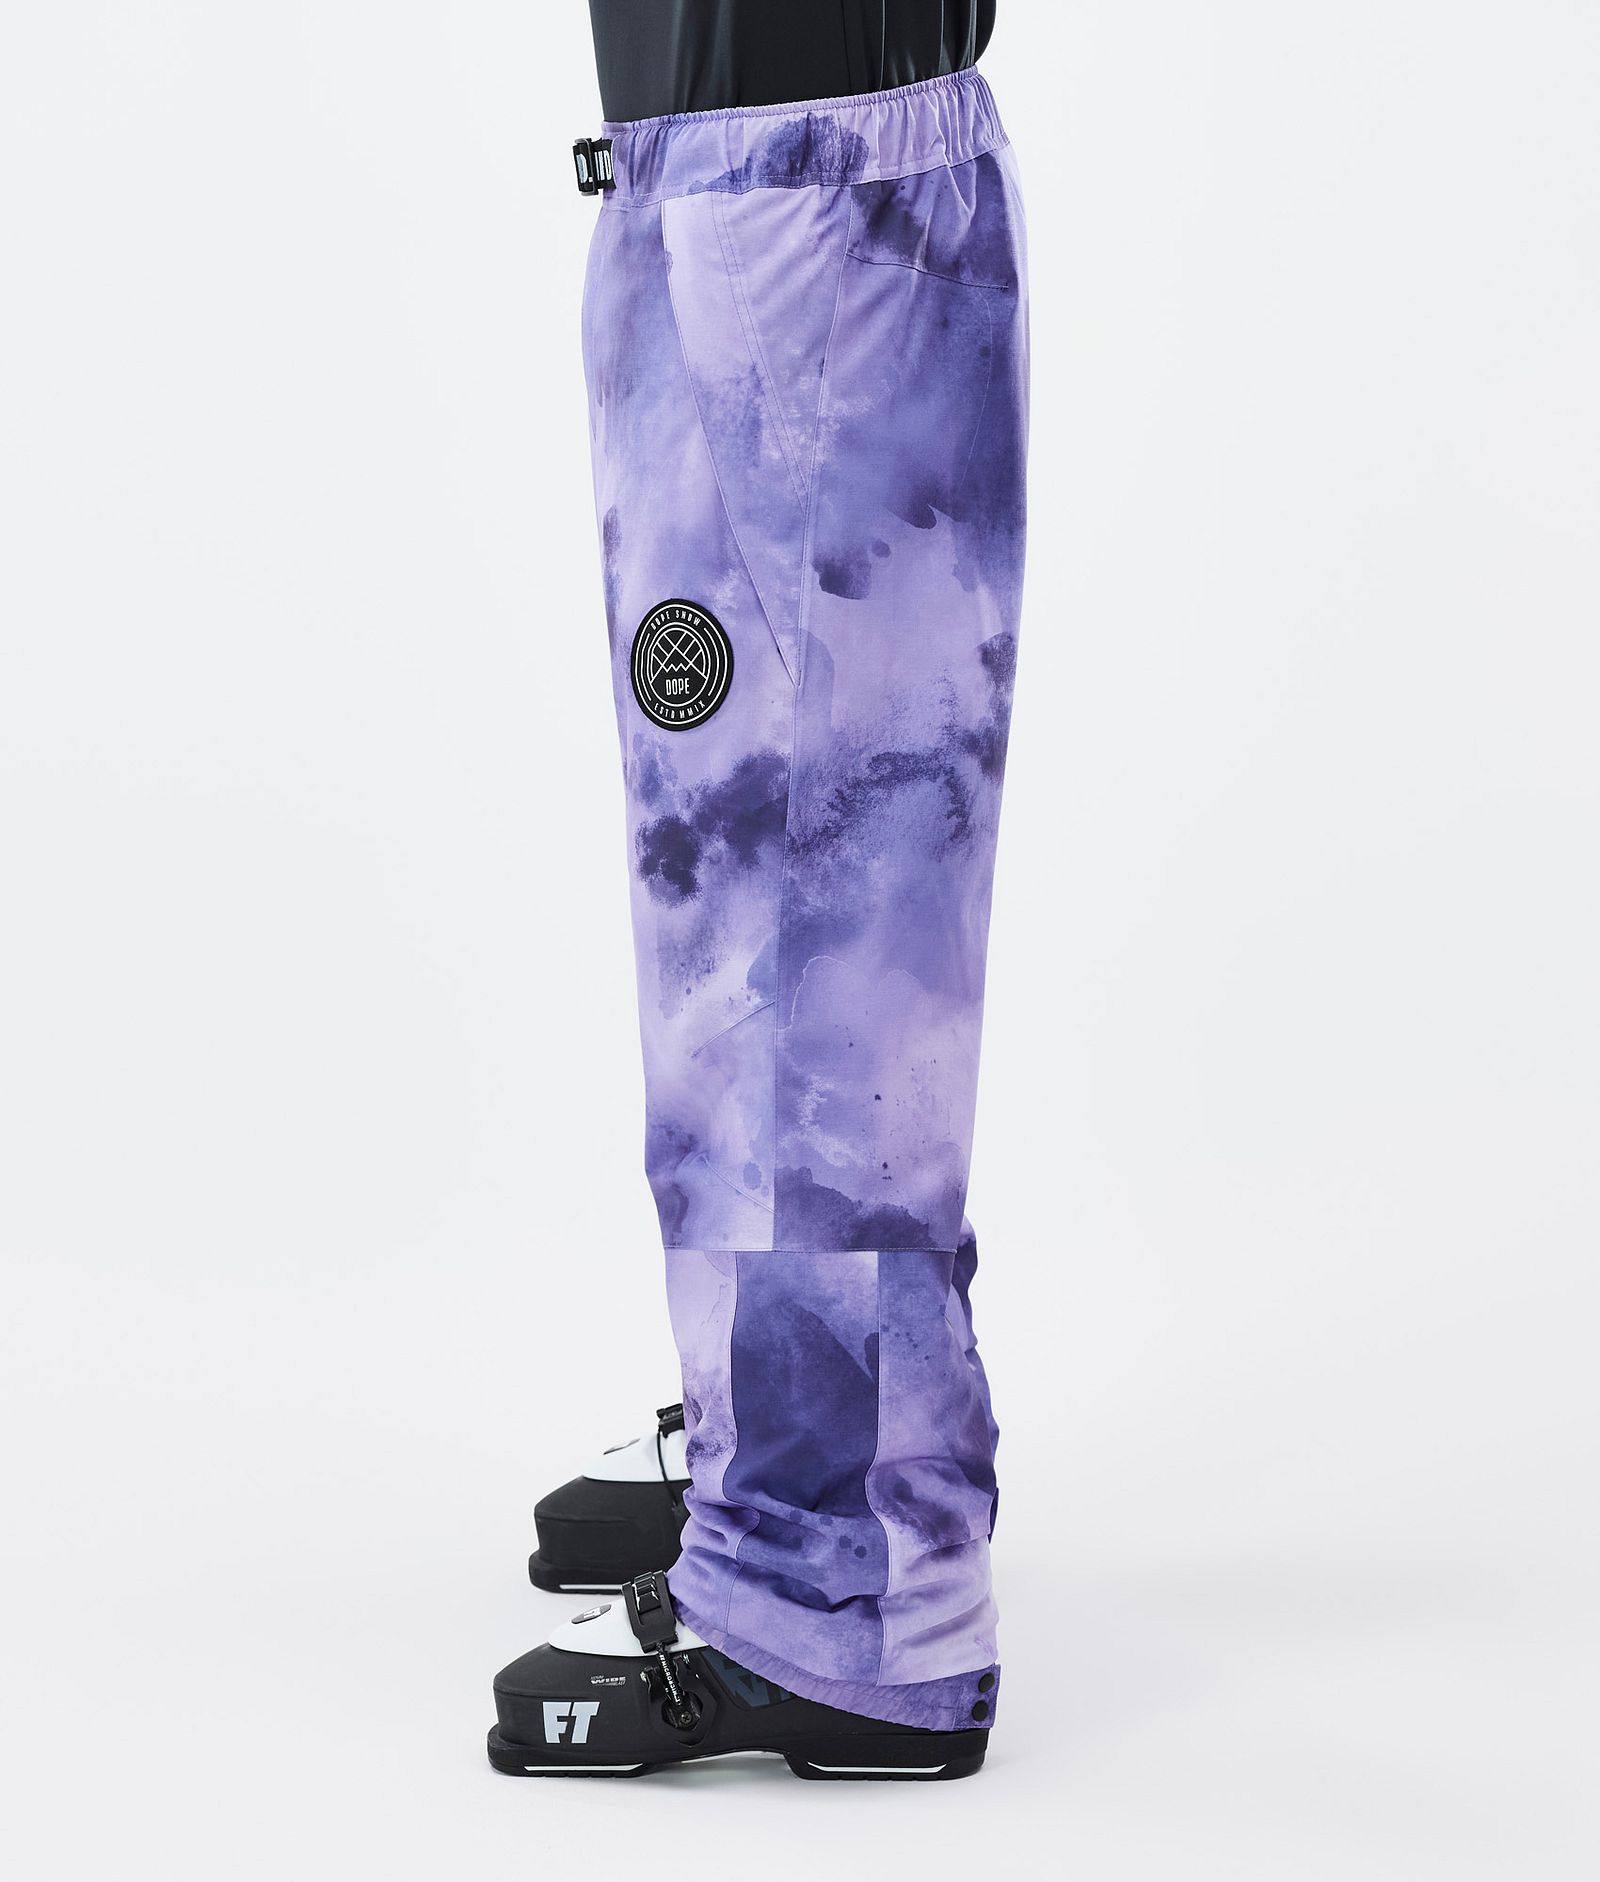 Blizzard Pantalon de Ski Homme Liquid Violet